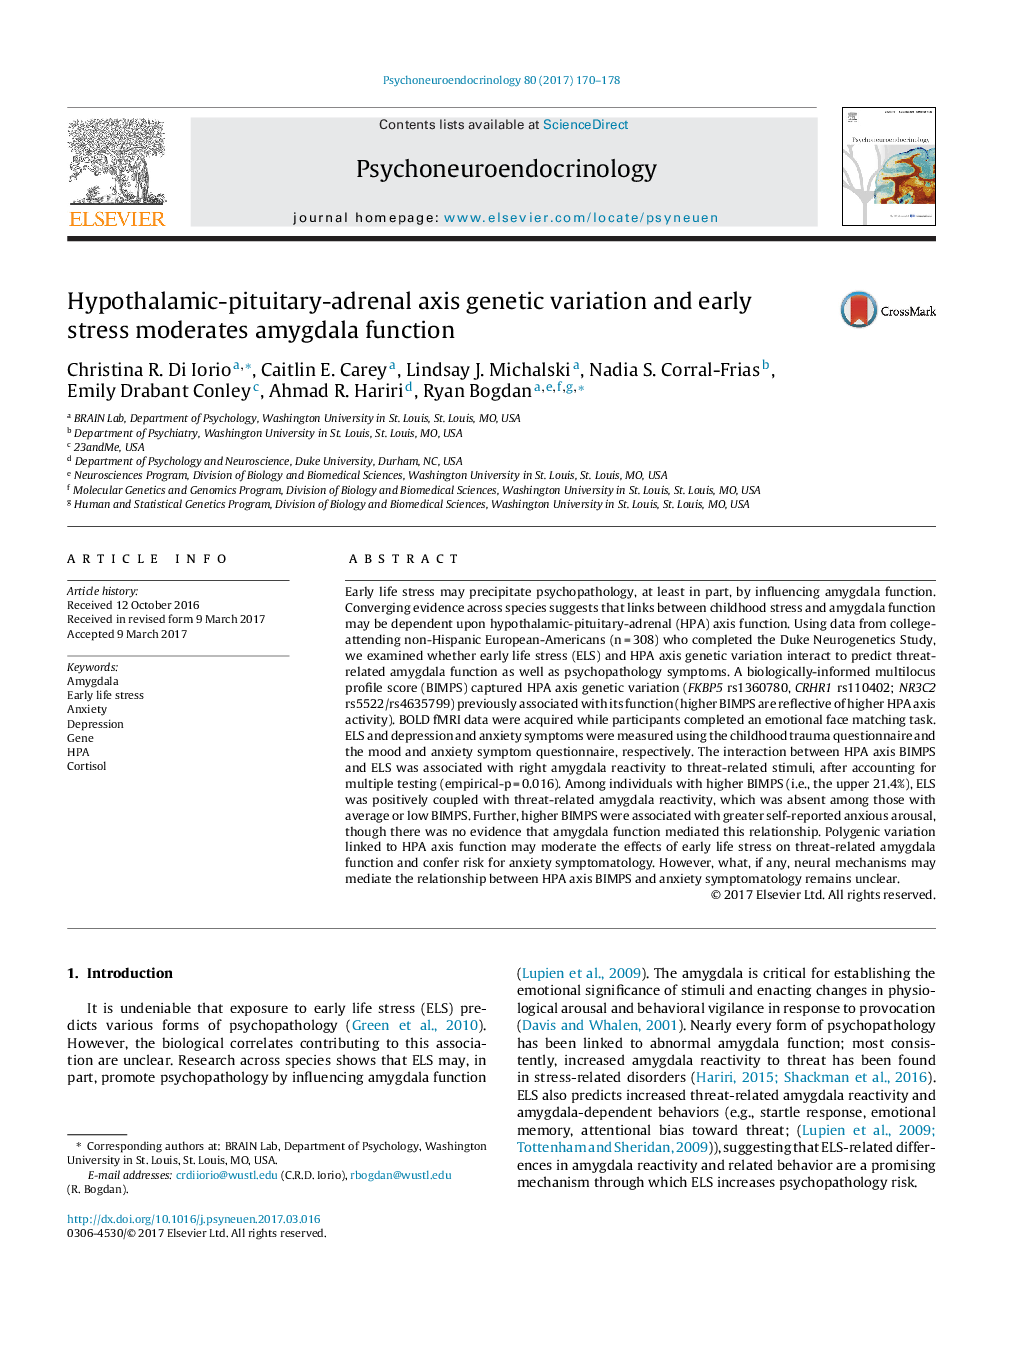 تنوع ژنتیکی و تنش اولیه محور هیپوتالاموس - هیپوفیز - آدرنال نسبت به عملکرد آمیگدال 